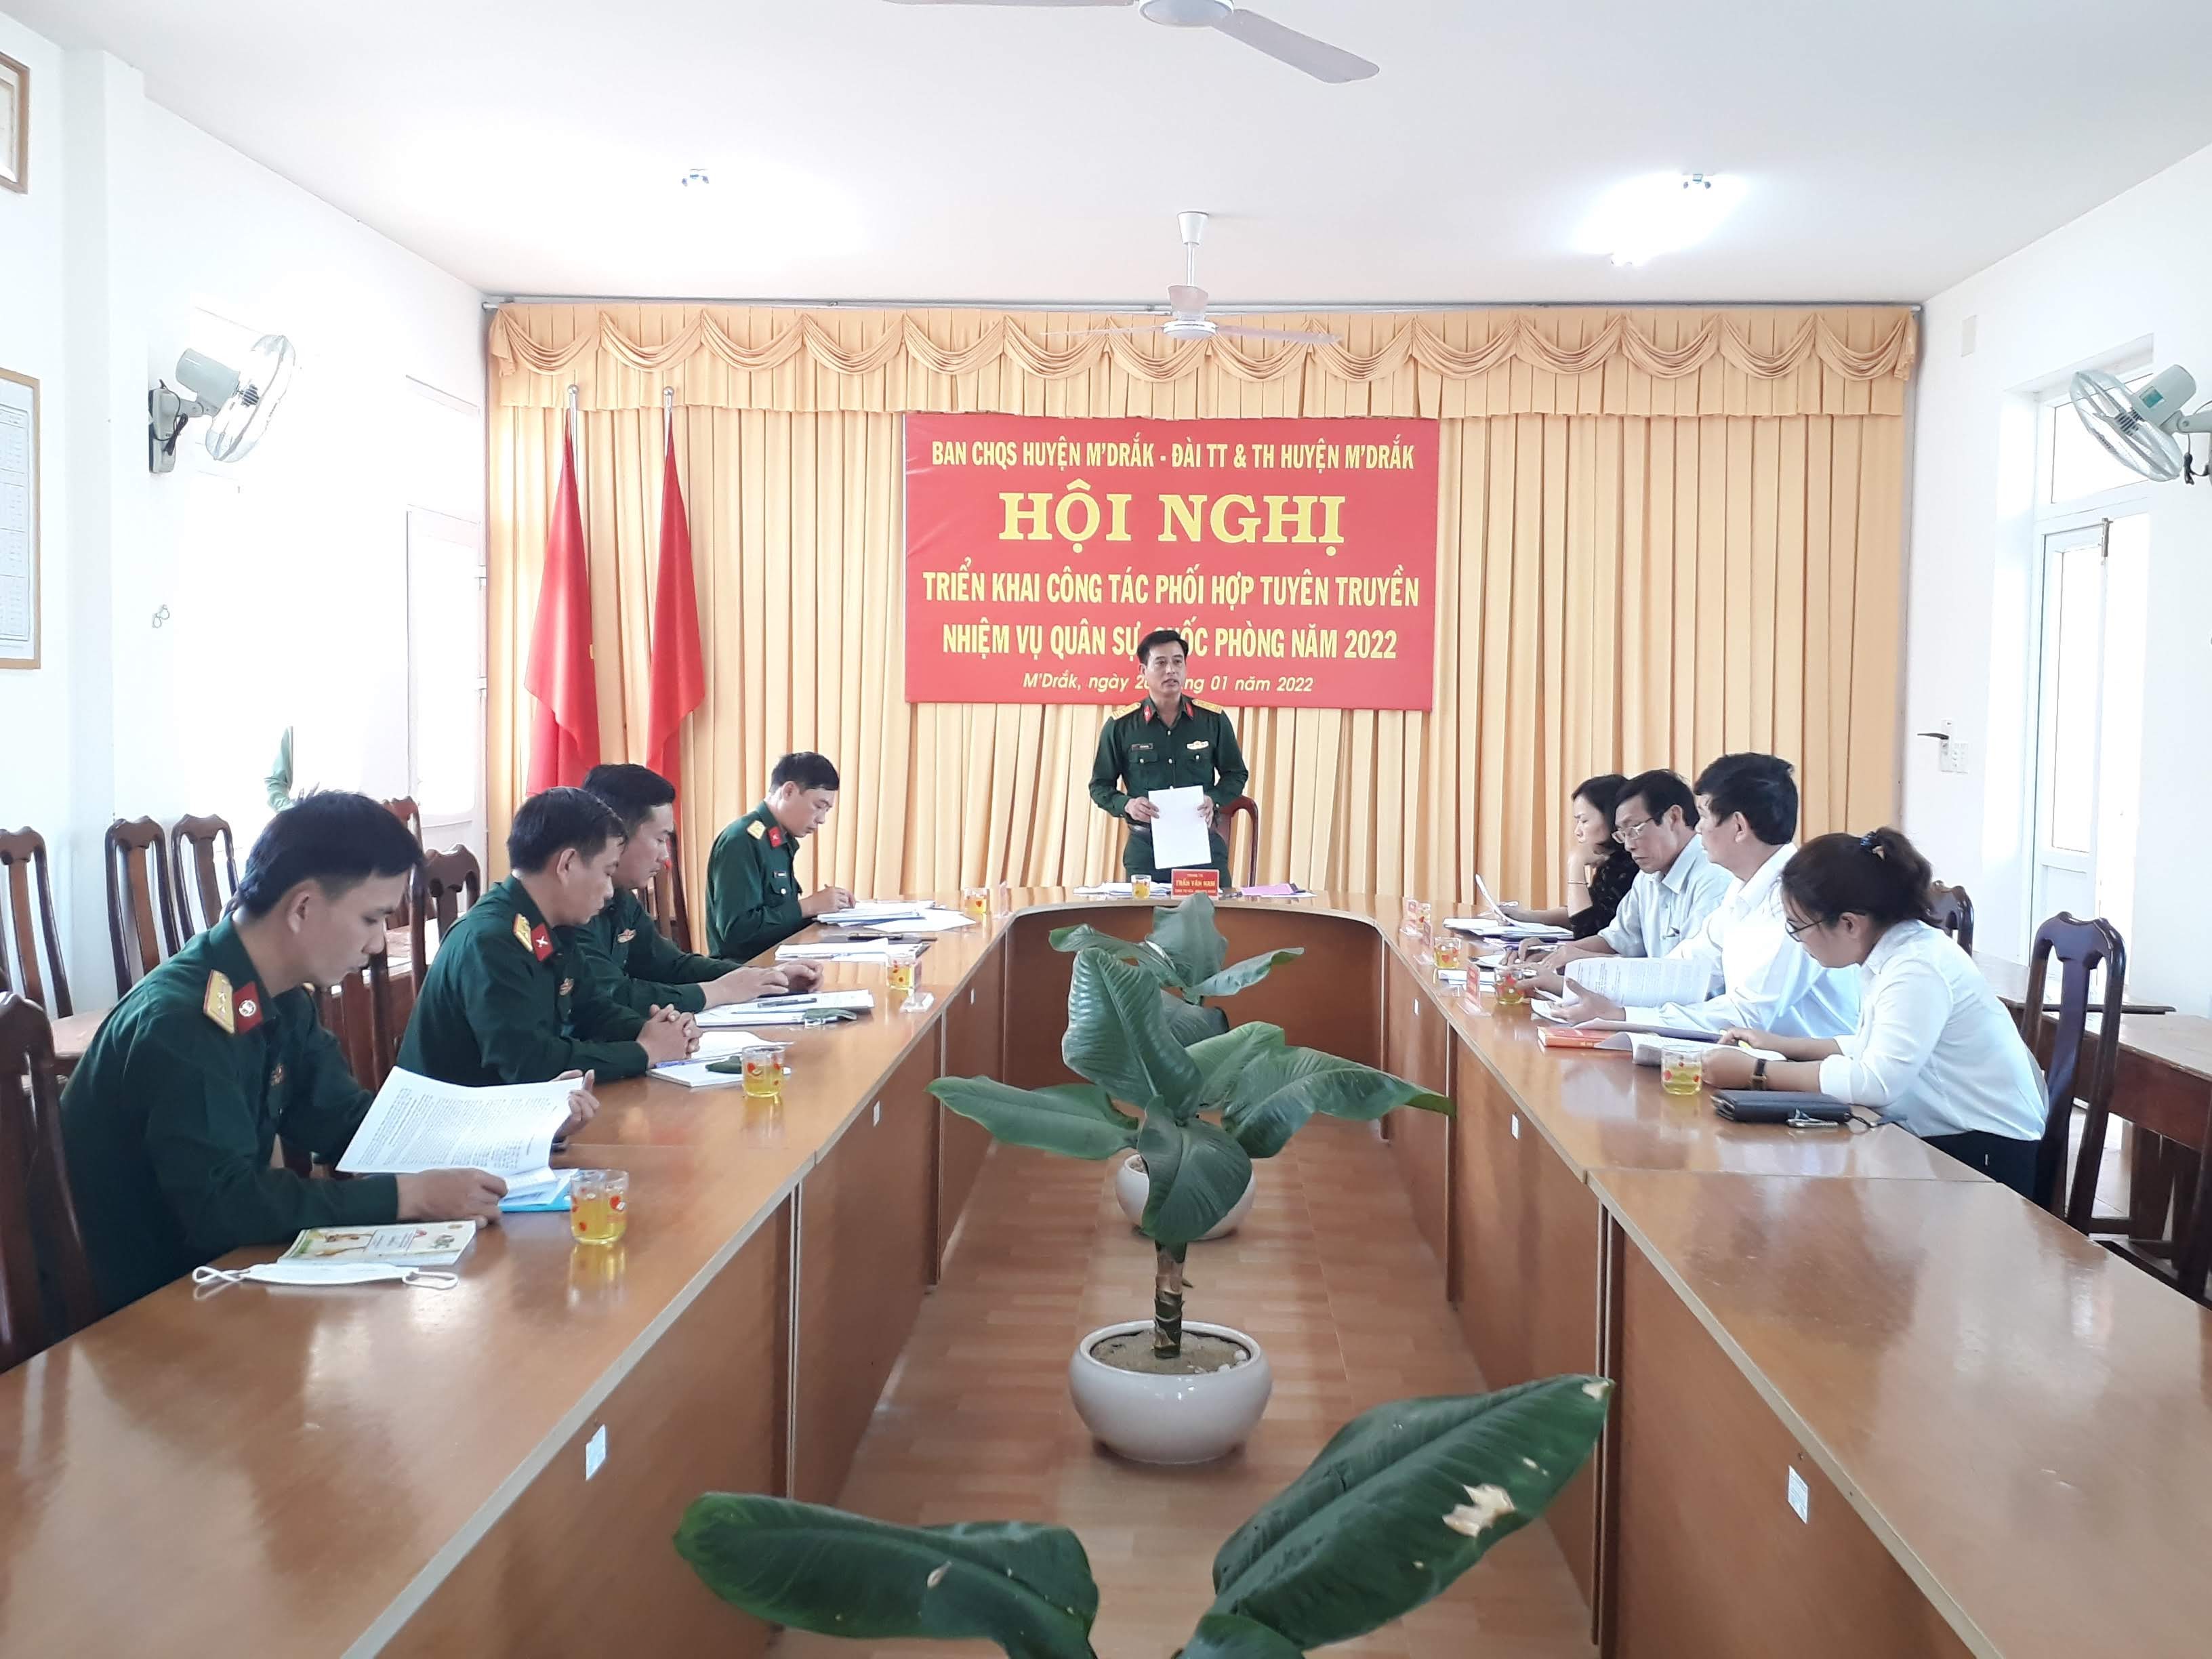 Huyện M’Drắk triển khai công tác phối hợp tuyên truyền nhiệm vụ quân sự, quốc phòng năm 2022